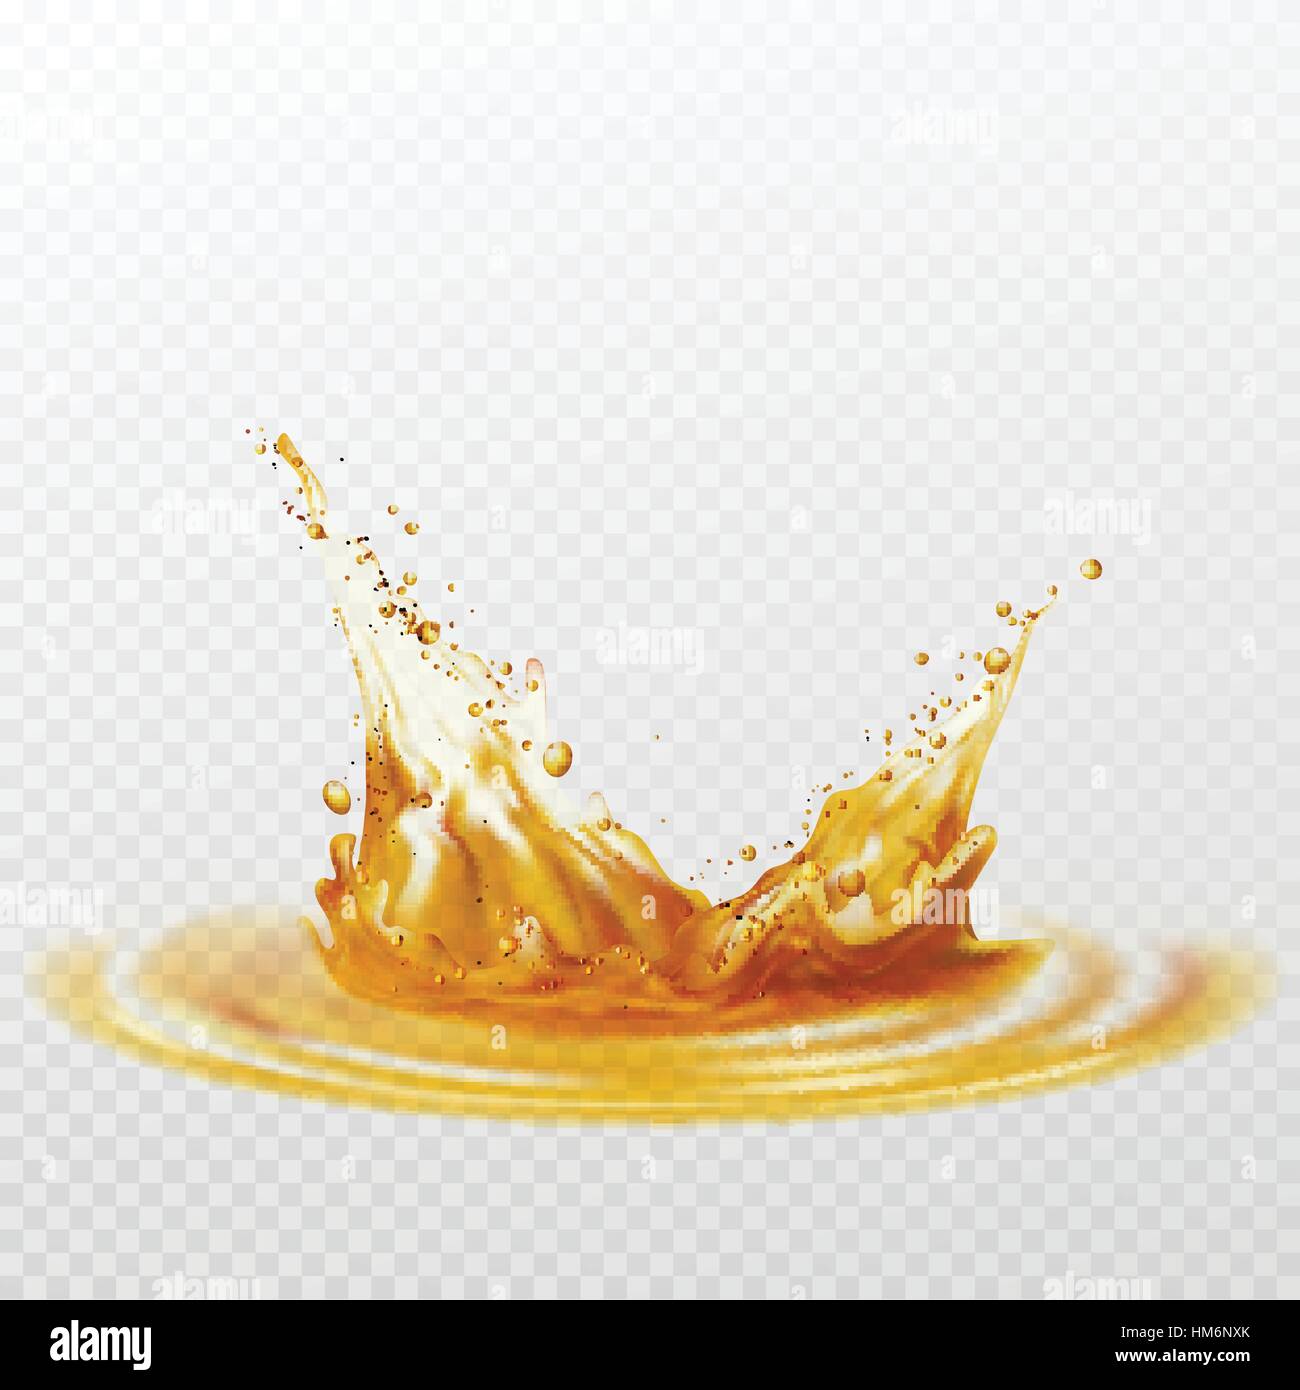 Bier Schaum Spritzer weißer und gelber Farbe auf einem transparenten  Hintergrund. Vektor-illustration Stock-Vektorgrafik - Alamy